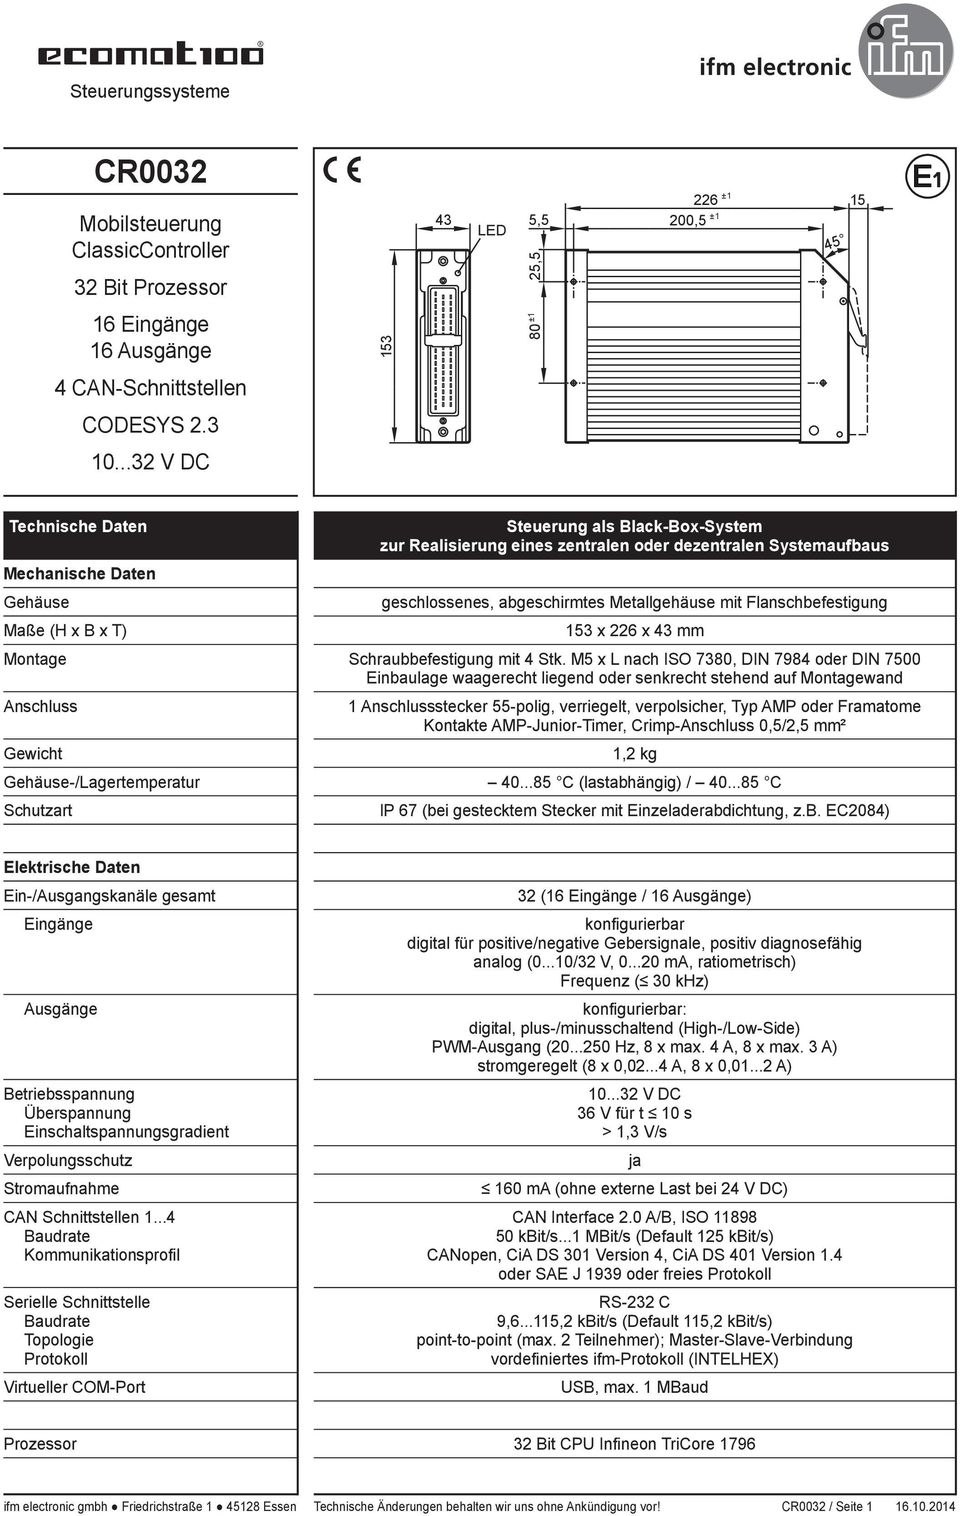 Flanschbefestigung Maße (H x B x T) 153 x 226 x 43 mm Montage chraubbefestigung mit 4 tk.